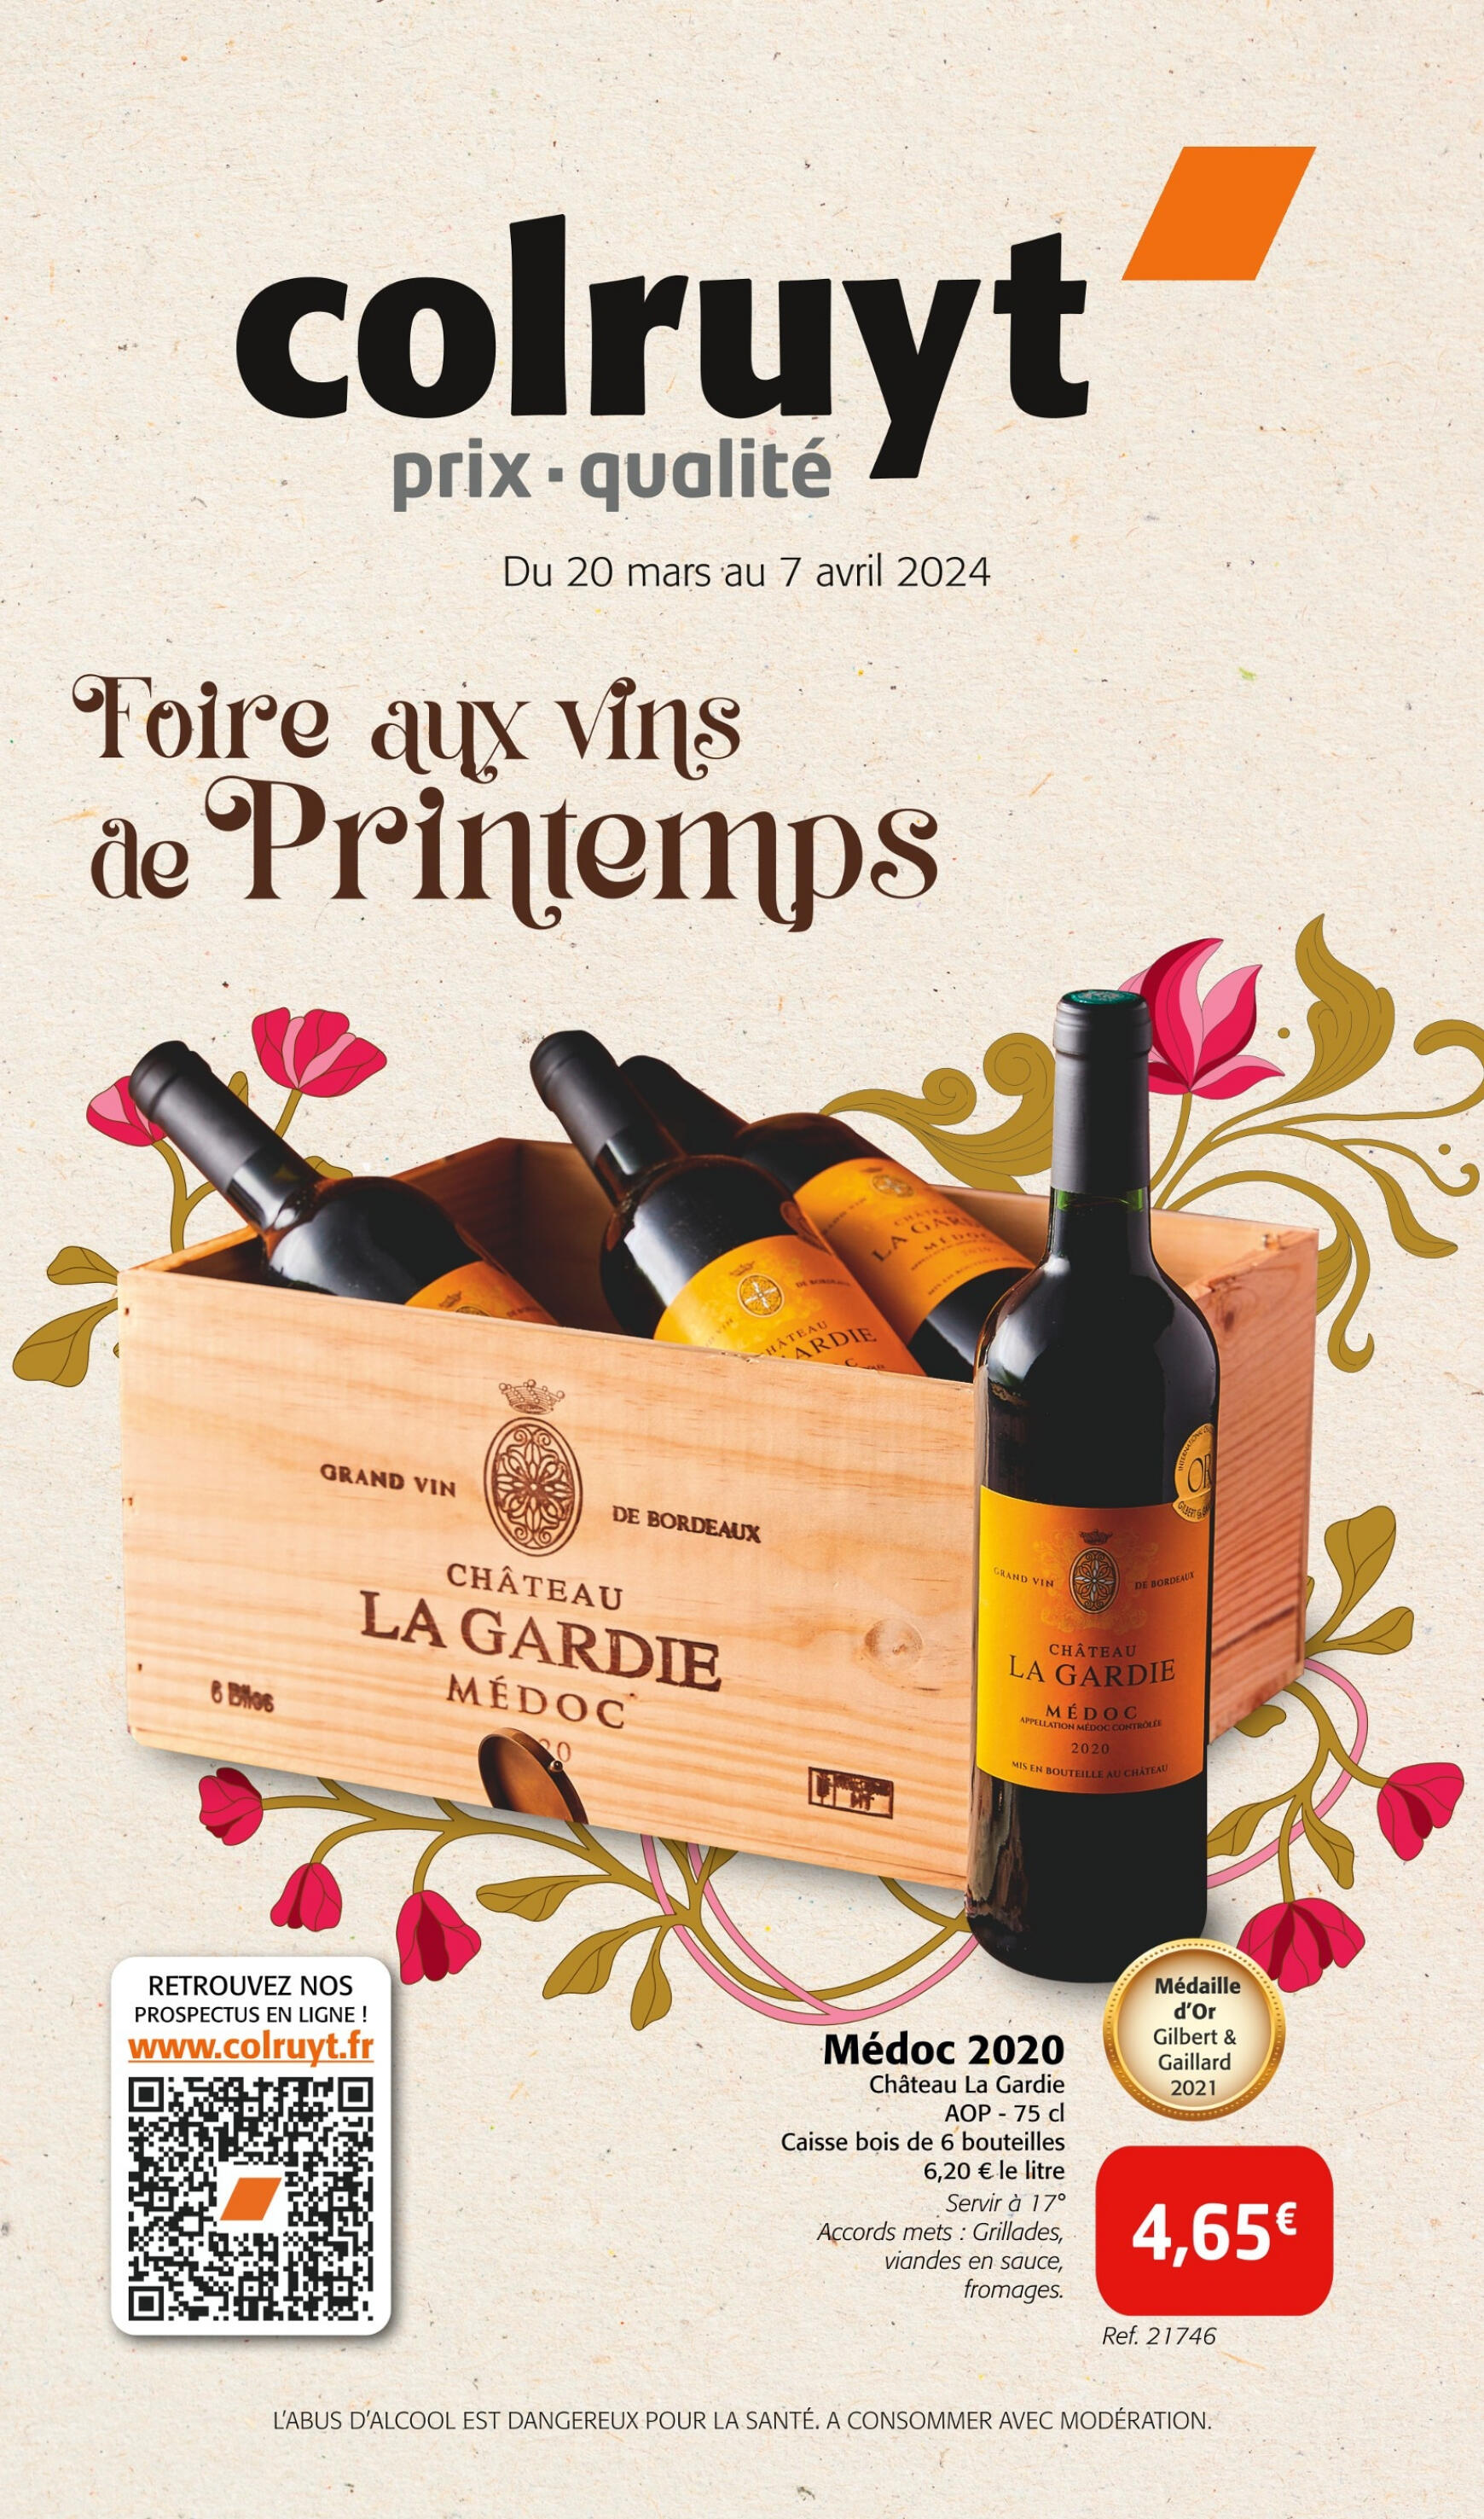 colruyt - Colruyt - Foire aux vins de Printemps valable à partir de 20.03.2024 - page: 1